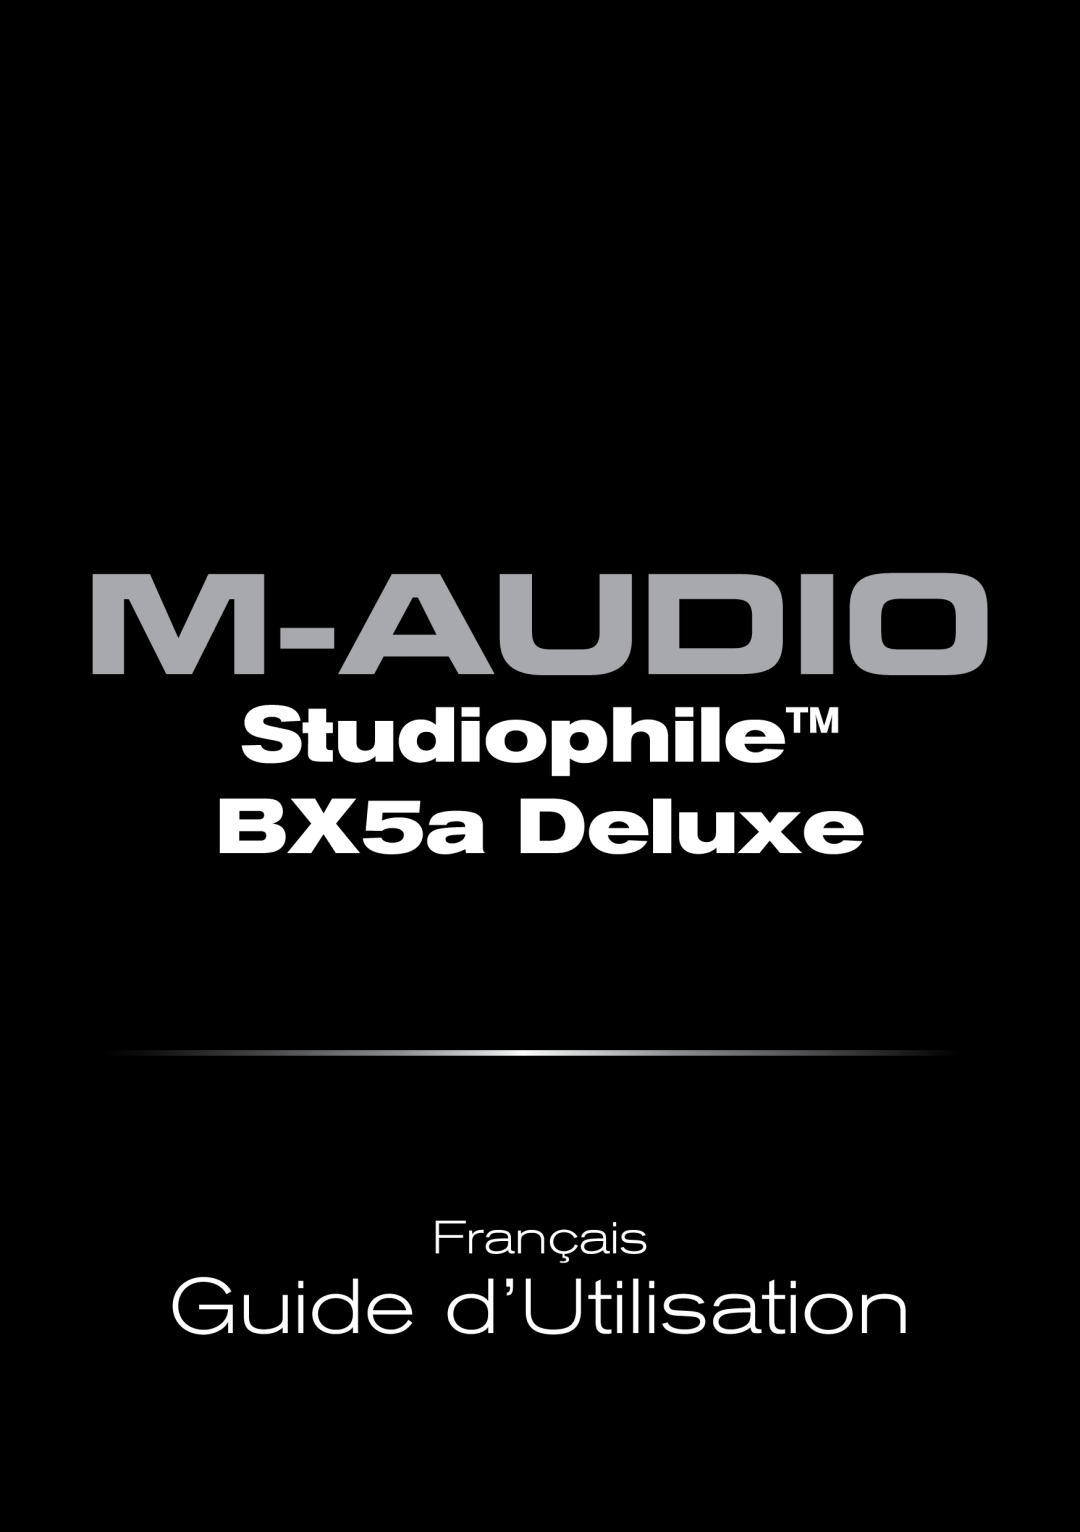 M-Audio manual Studiophile BX5a Deluxe, Guide d’Utilisation, Français 